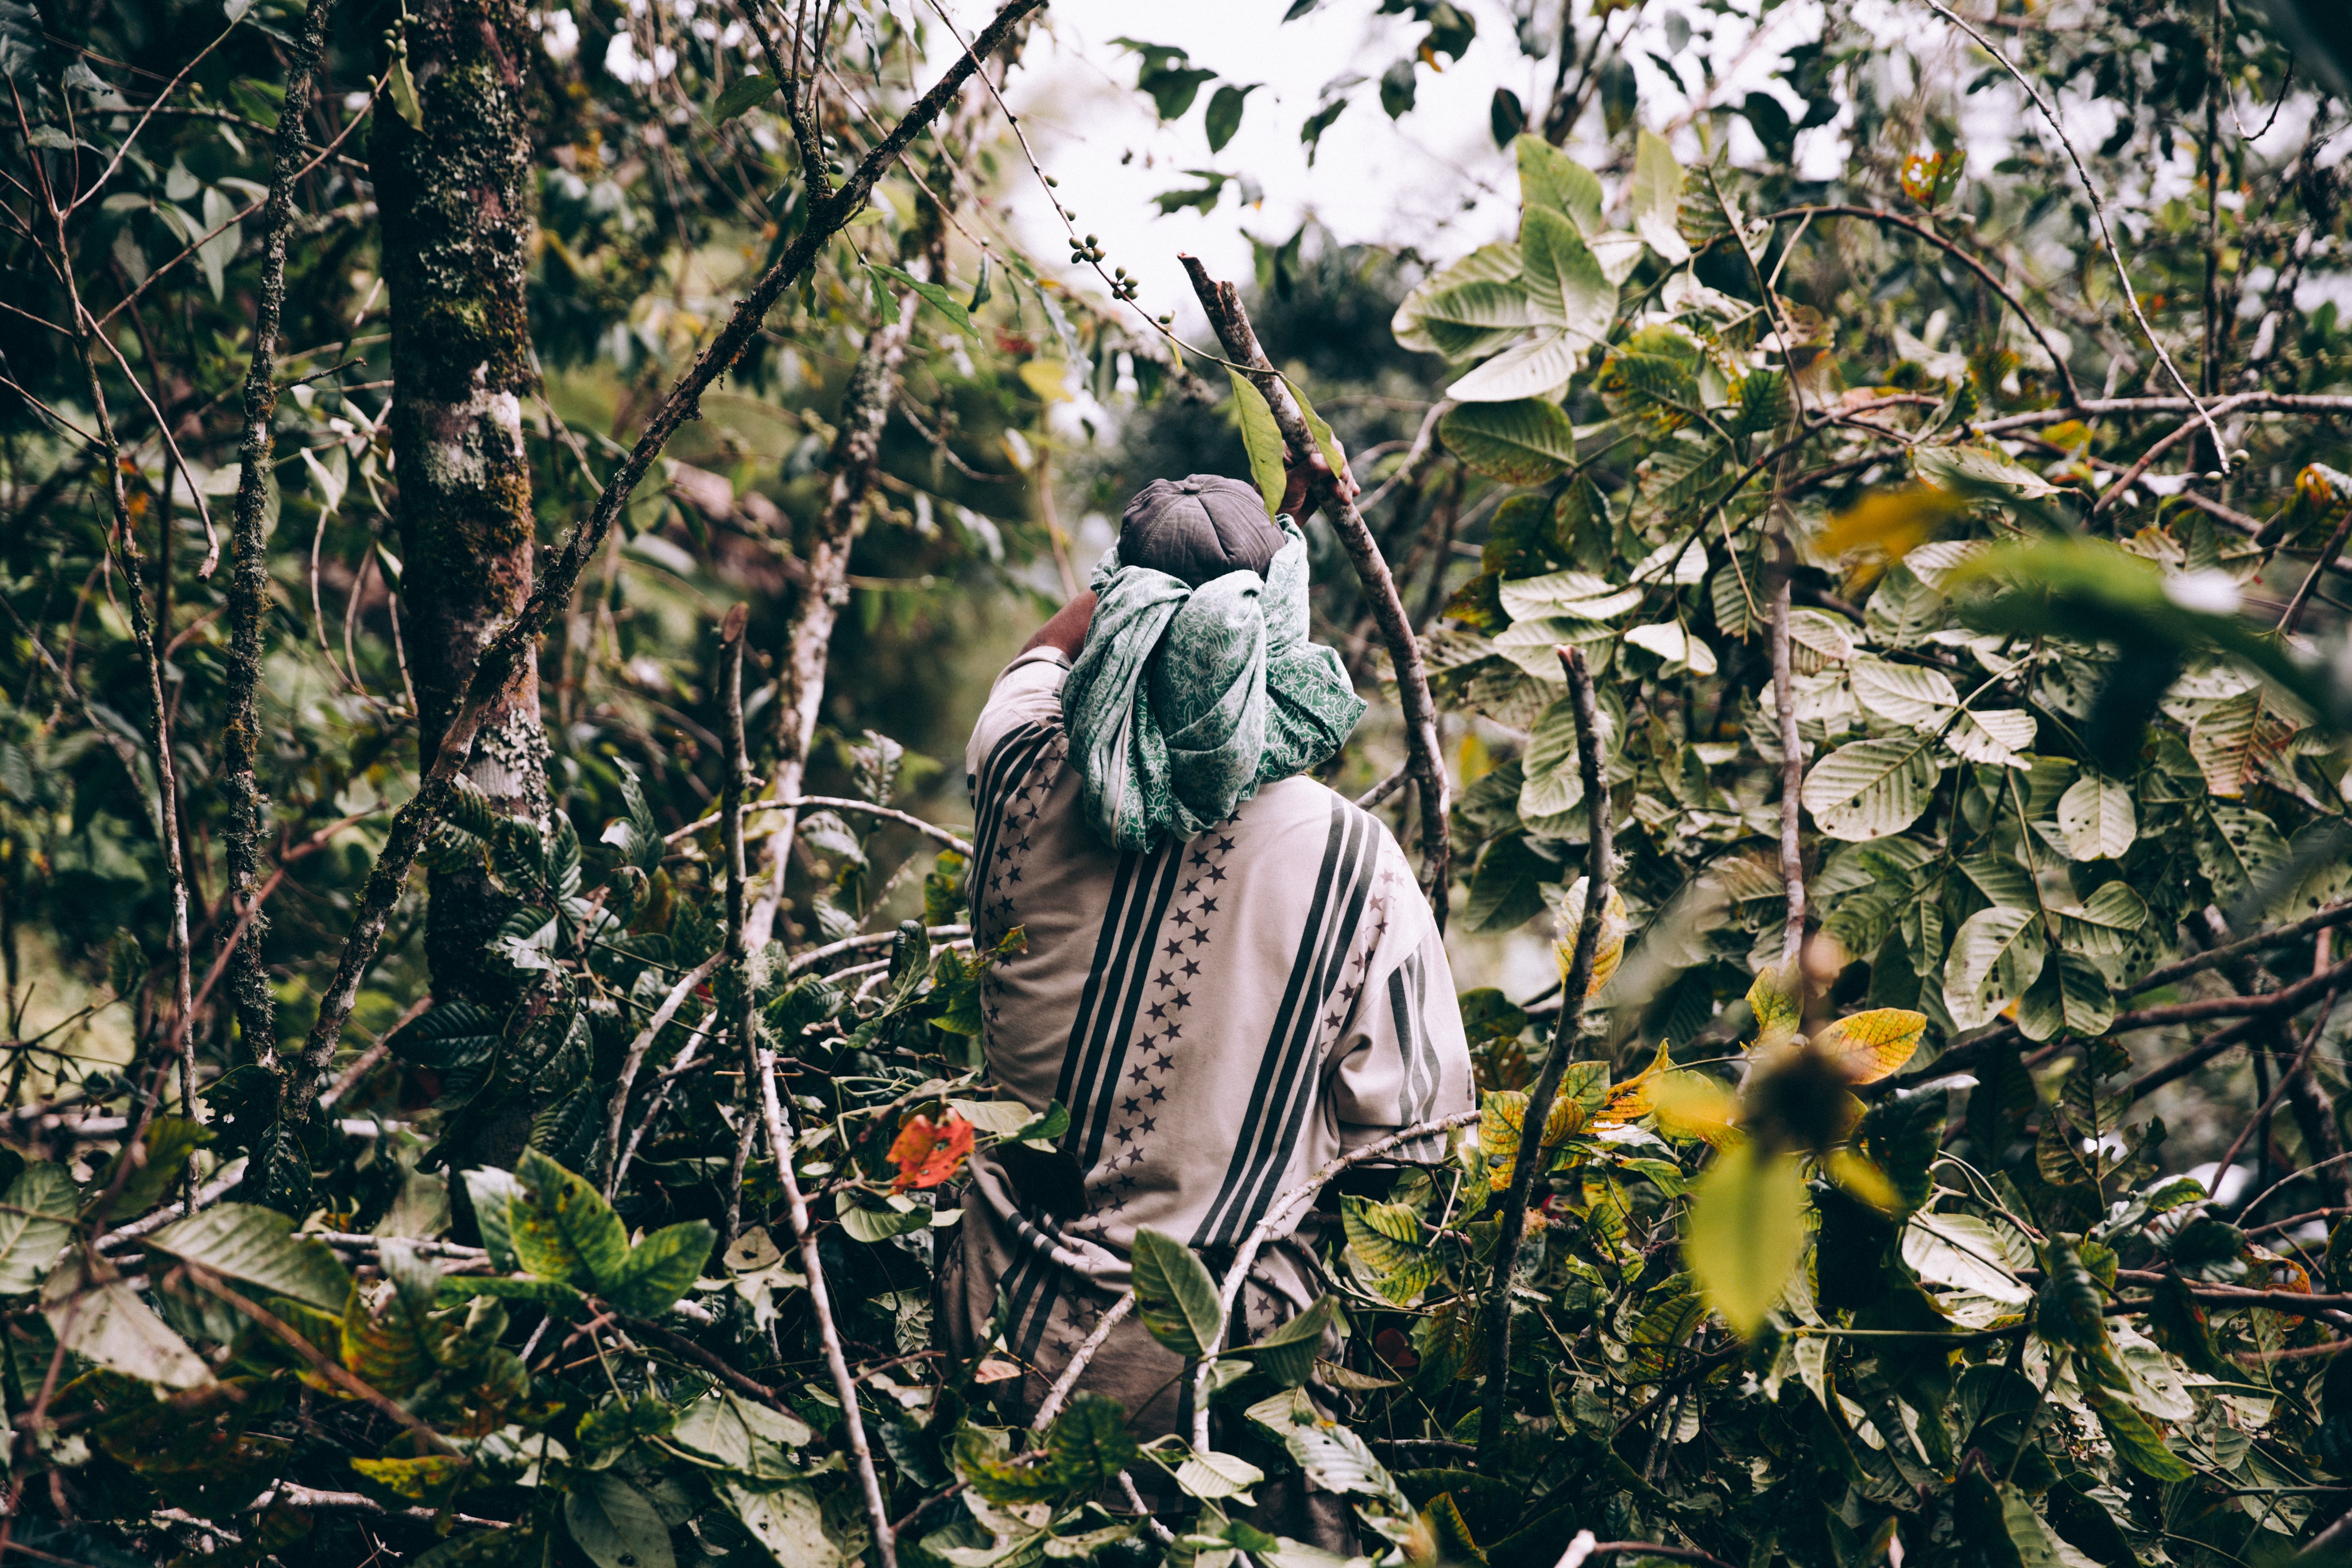 man-wearing-loose-clothing-walks-through-jungle.jpg